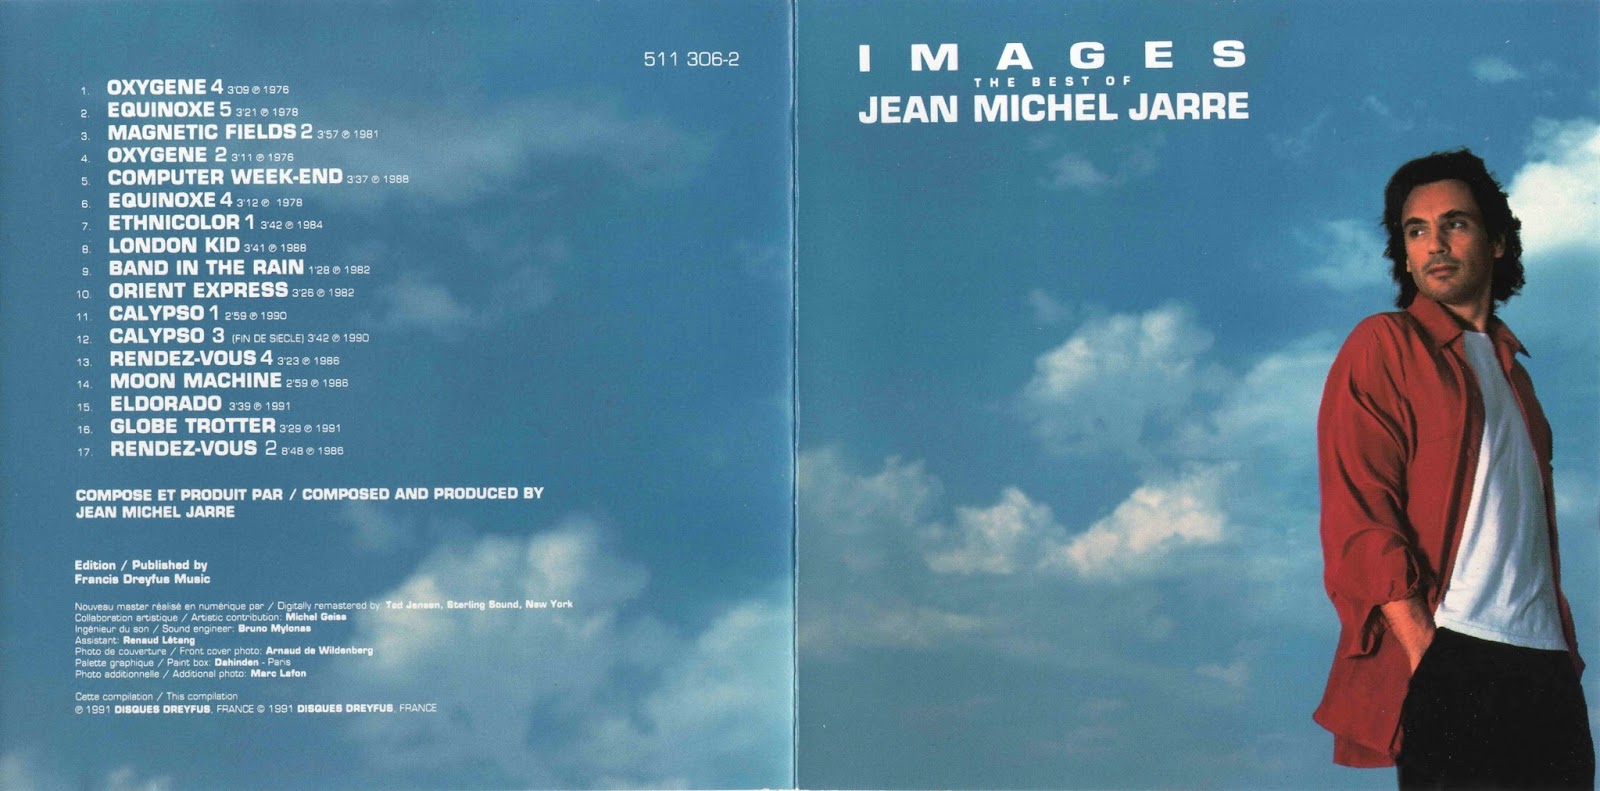 Jean michel jarre versailles 400. Jean Michel Jarre альбомы. Jean Michel Jarre Magnetic fields 1981. Jean Michel Jarre 1994.